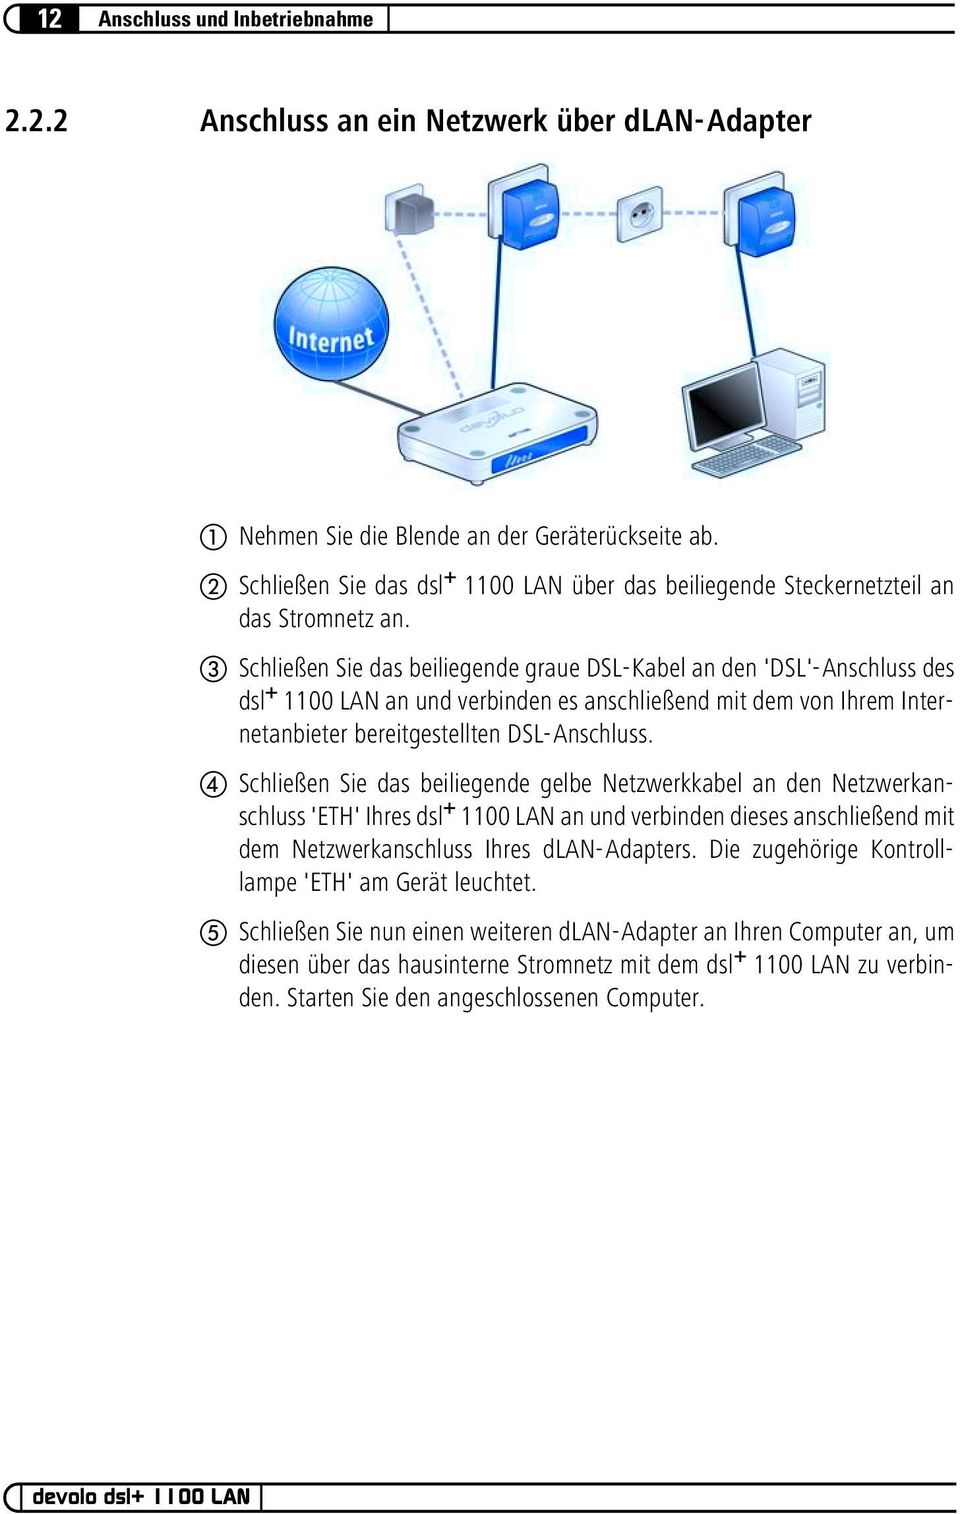 Schließen Sie das beiliegende graue DSL-Kabel an den 'DSL'-Anschluss des dsl + 1100 LAN an und verbinden es anschließend mit dem von Ihrem Internetanbieter bereitgestellten DSL-Anschluss.